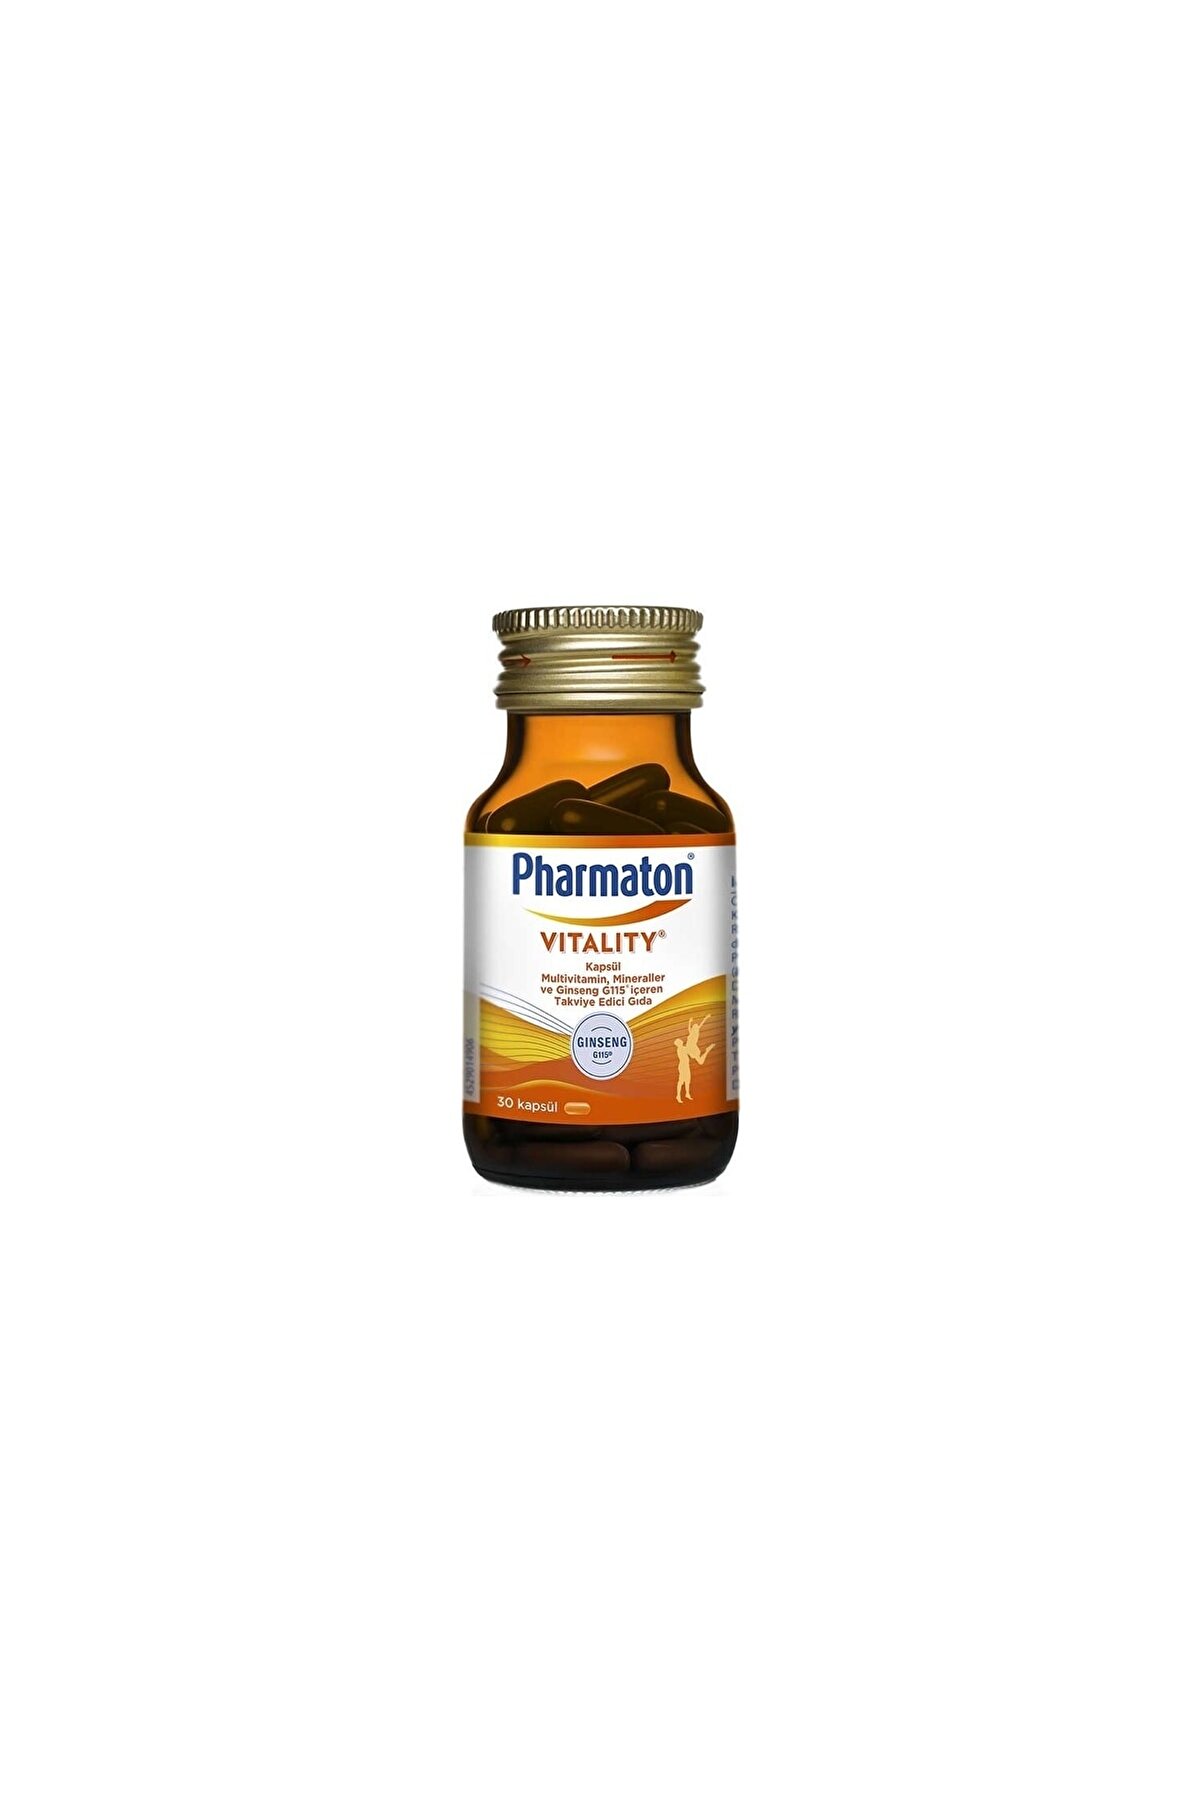 Pharmaton Vitality 30 Kapsül 2 Adet